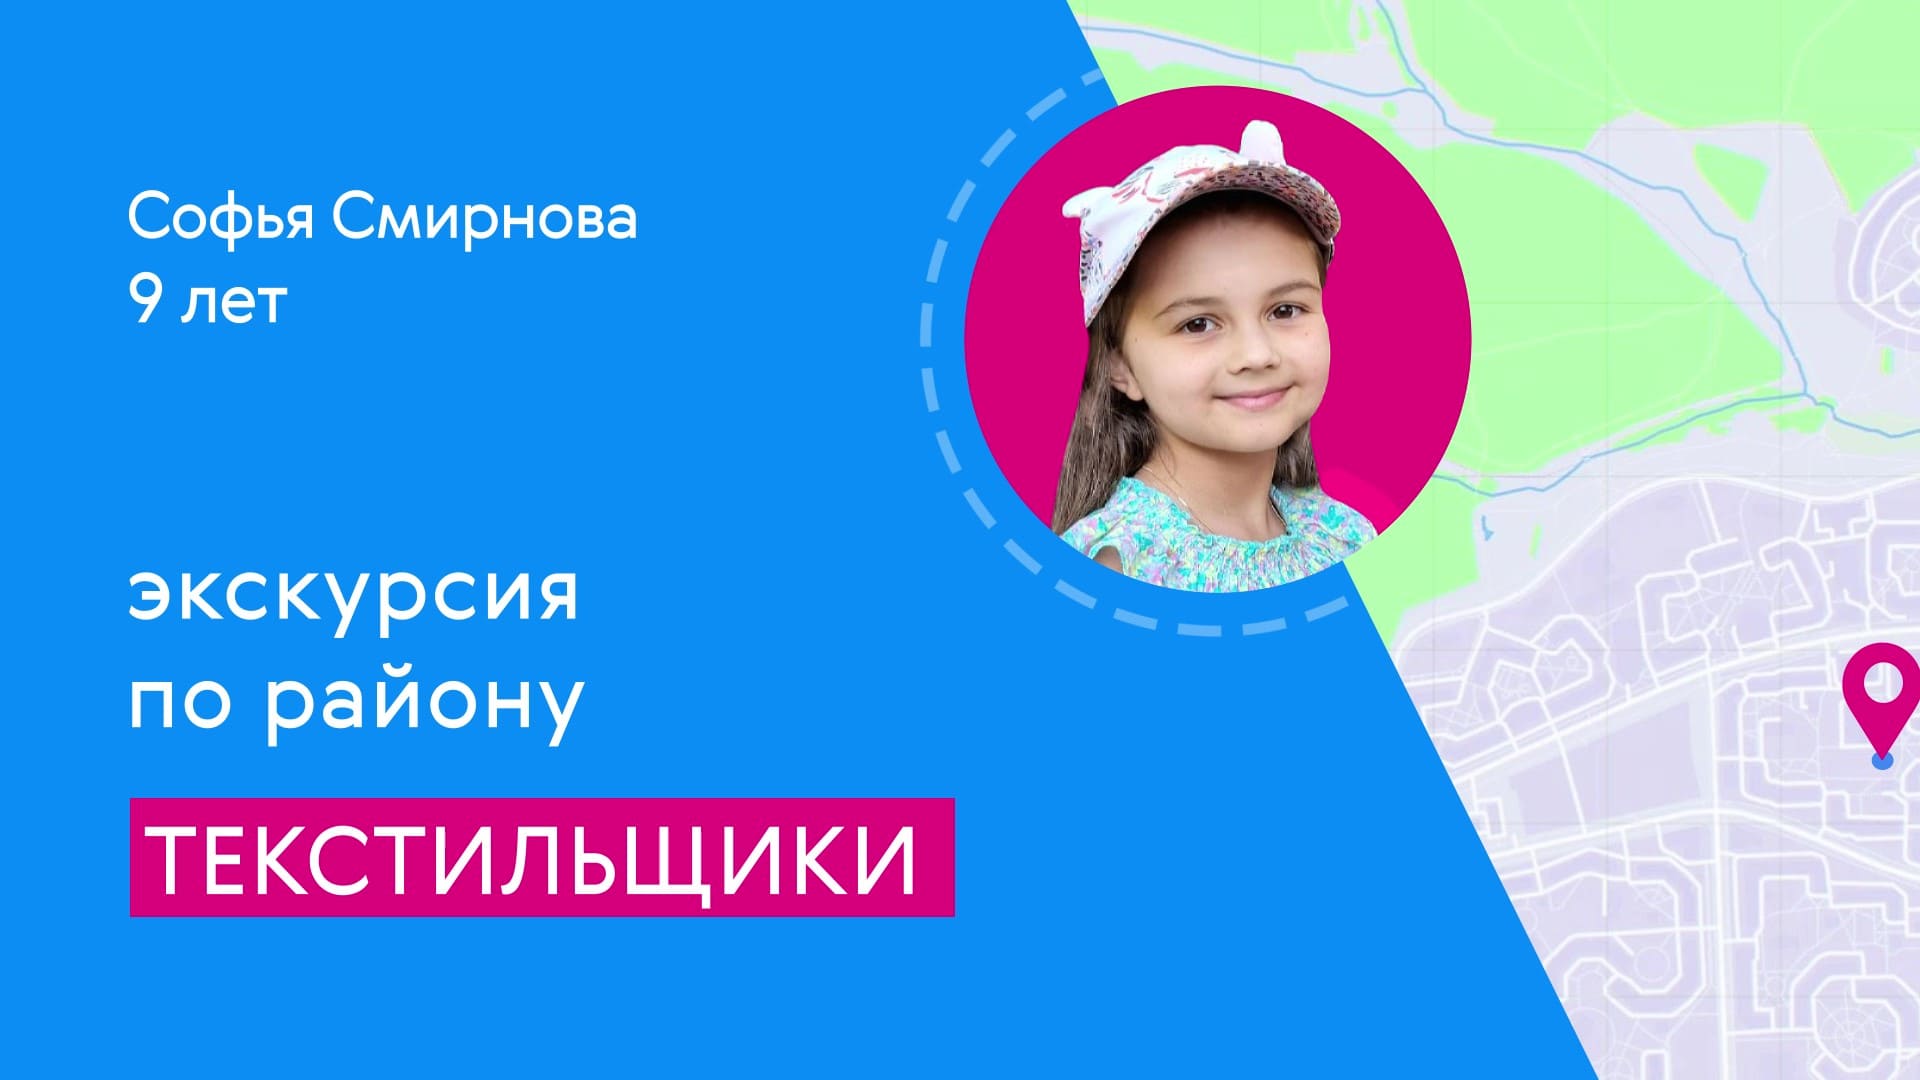 Районы Москвы глазами детей: Текстильщики